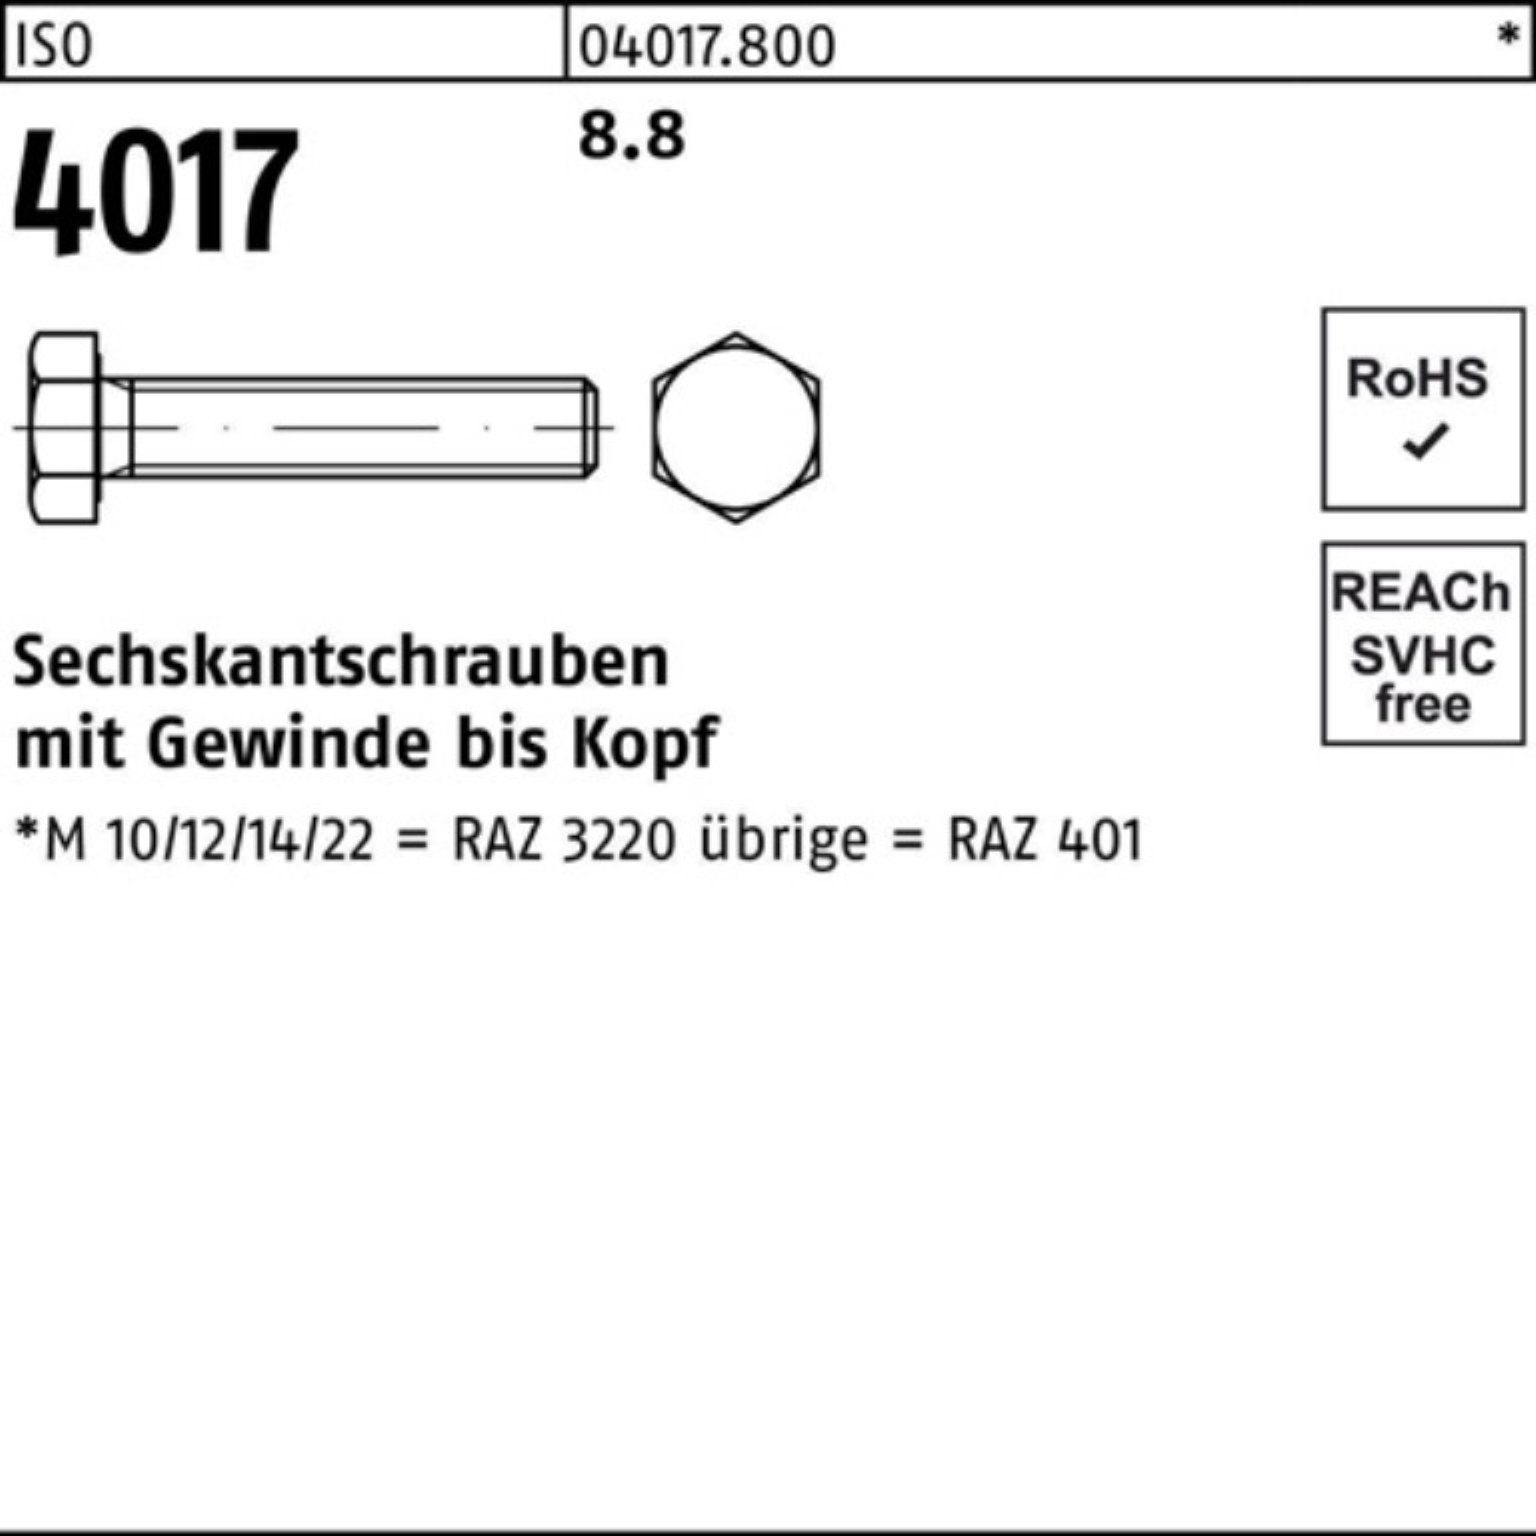 75 Bufab 401 VG 200 Sechskantschraube Pack M6x 200er Sechskantschraube 4017 8.8 Stück ISO ISO